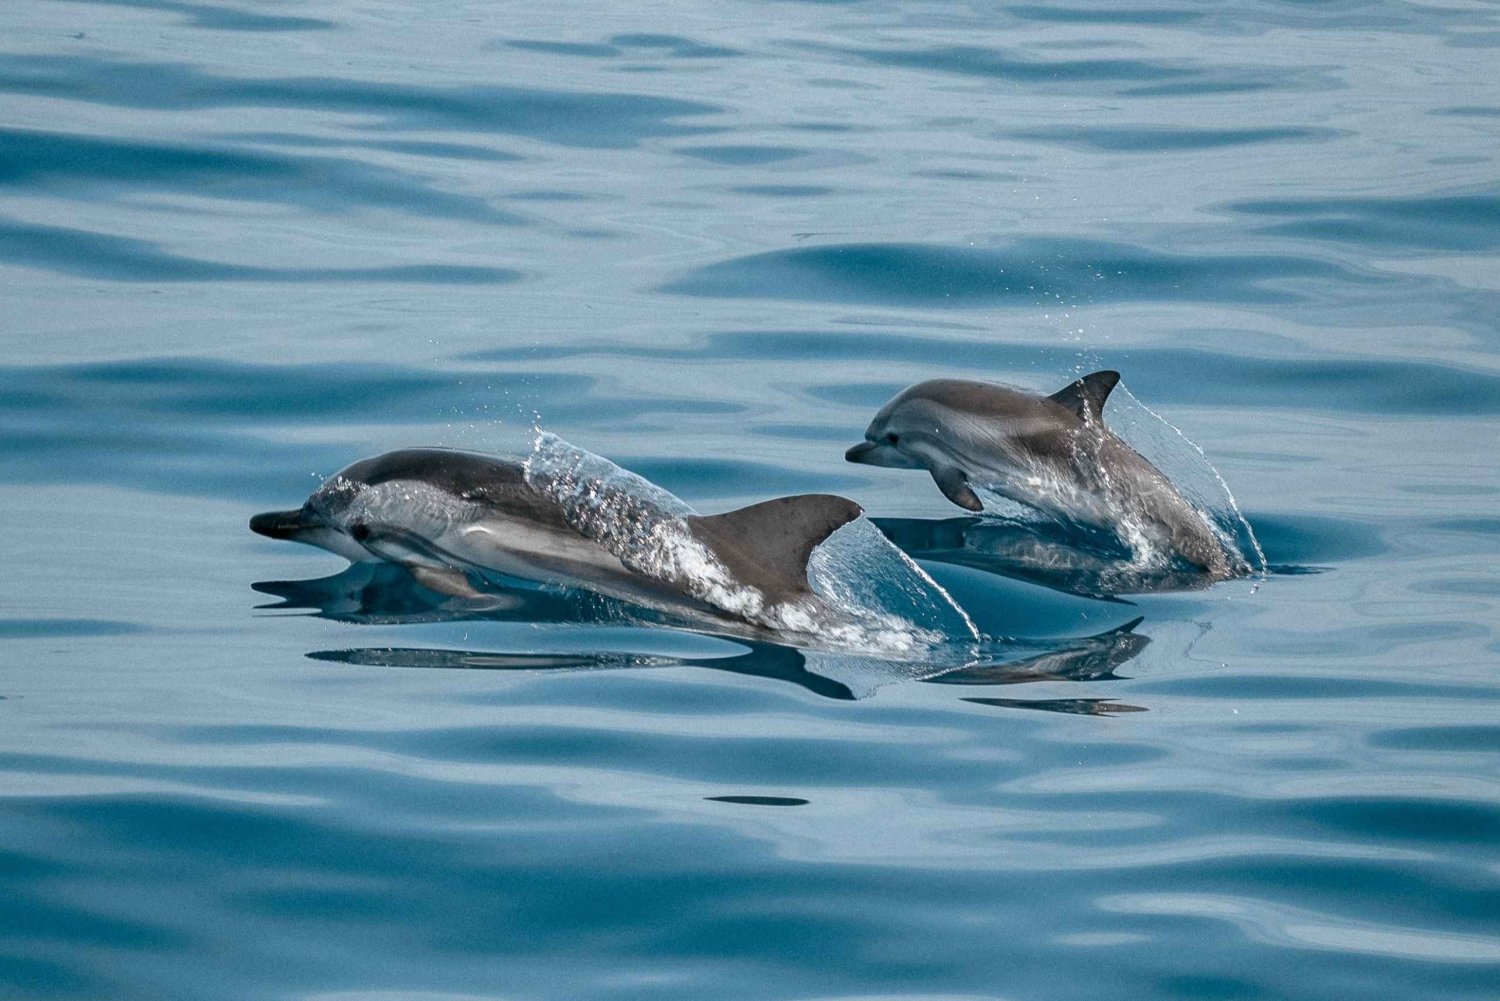 Sotogrande: Excursión en barco para avistar delfines con bebida